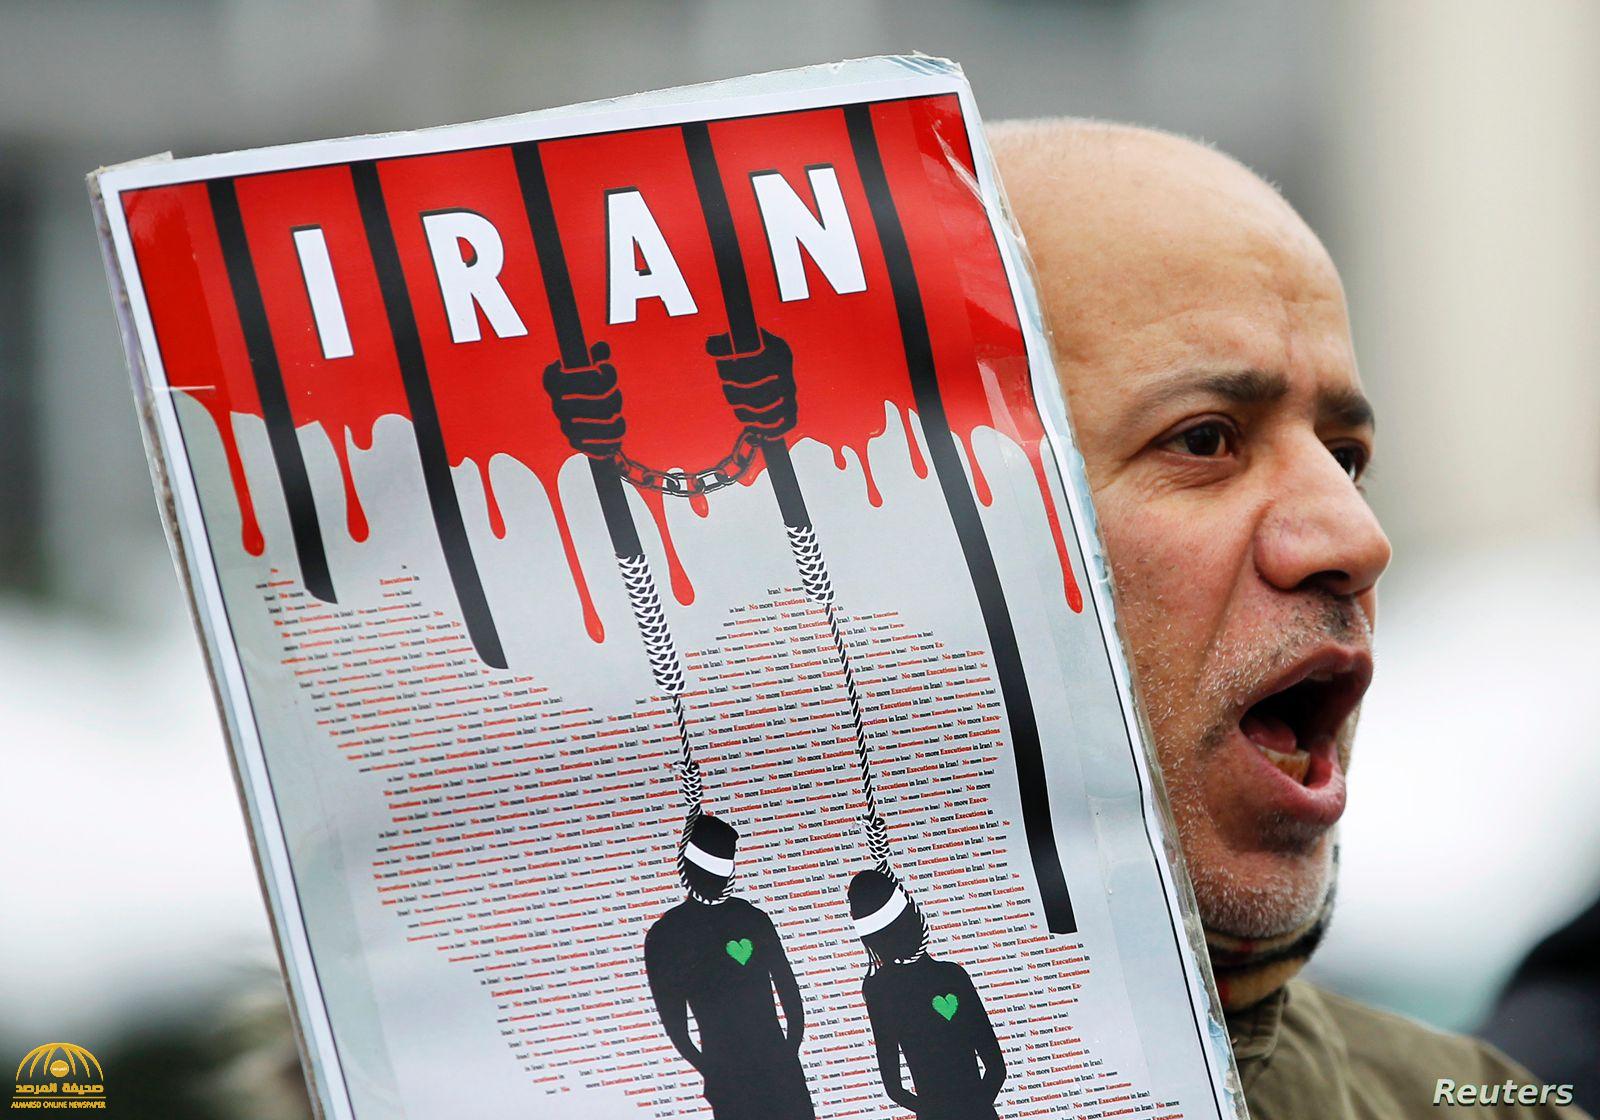 غضب دولي لإعدام إيراني أدين بجريمة ارتكبت حين كان قاصرا